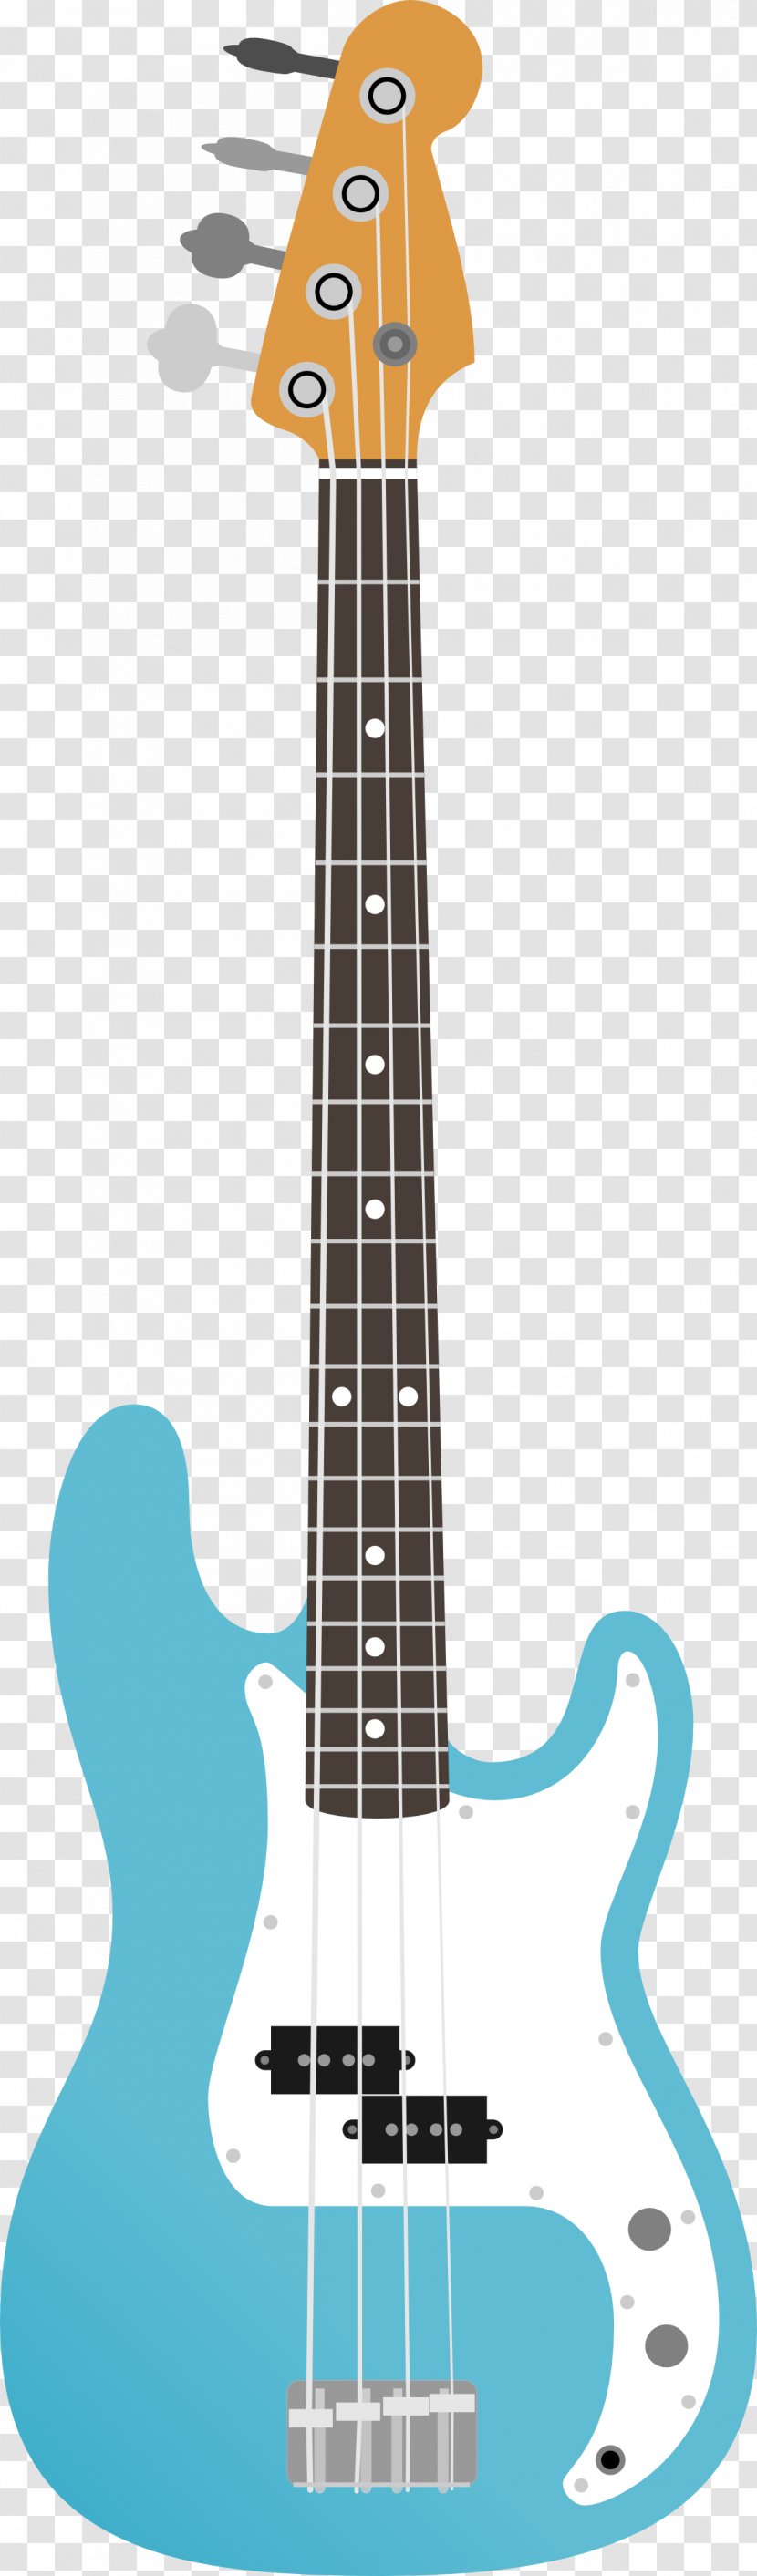 Fender Precision Bass Jaguar Guitar - Jazz - Cartoon Transparent PNG